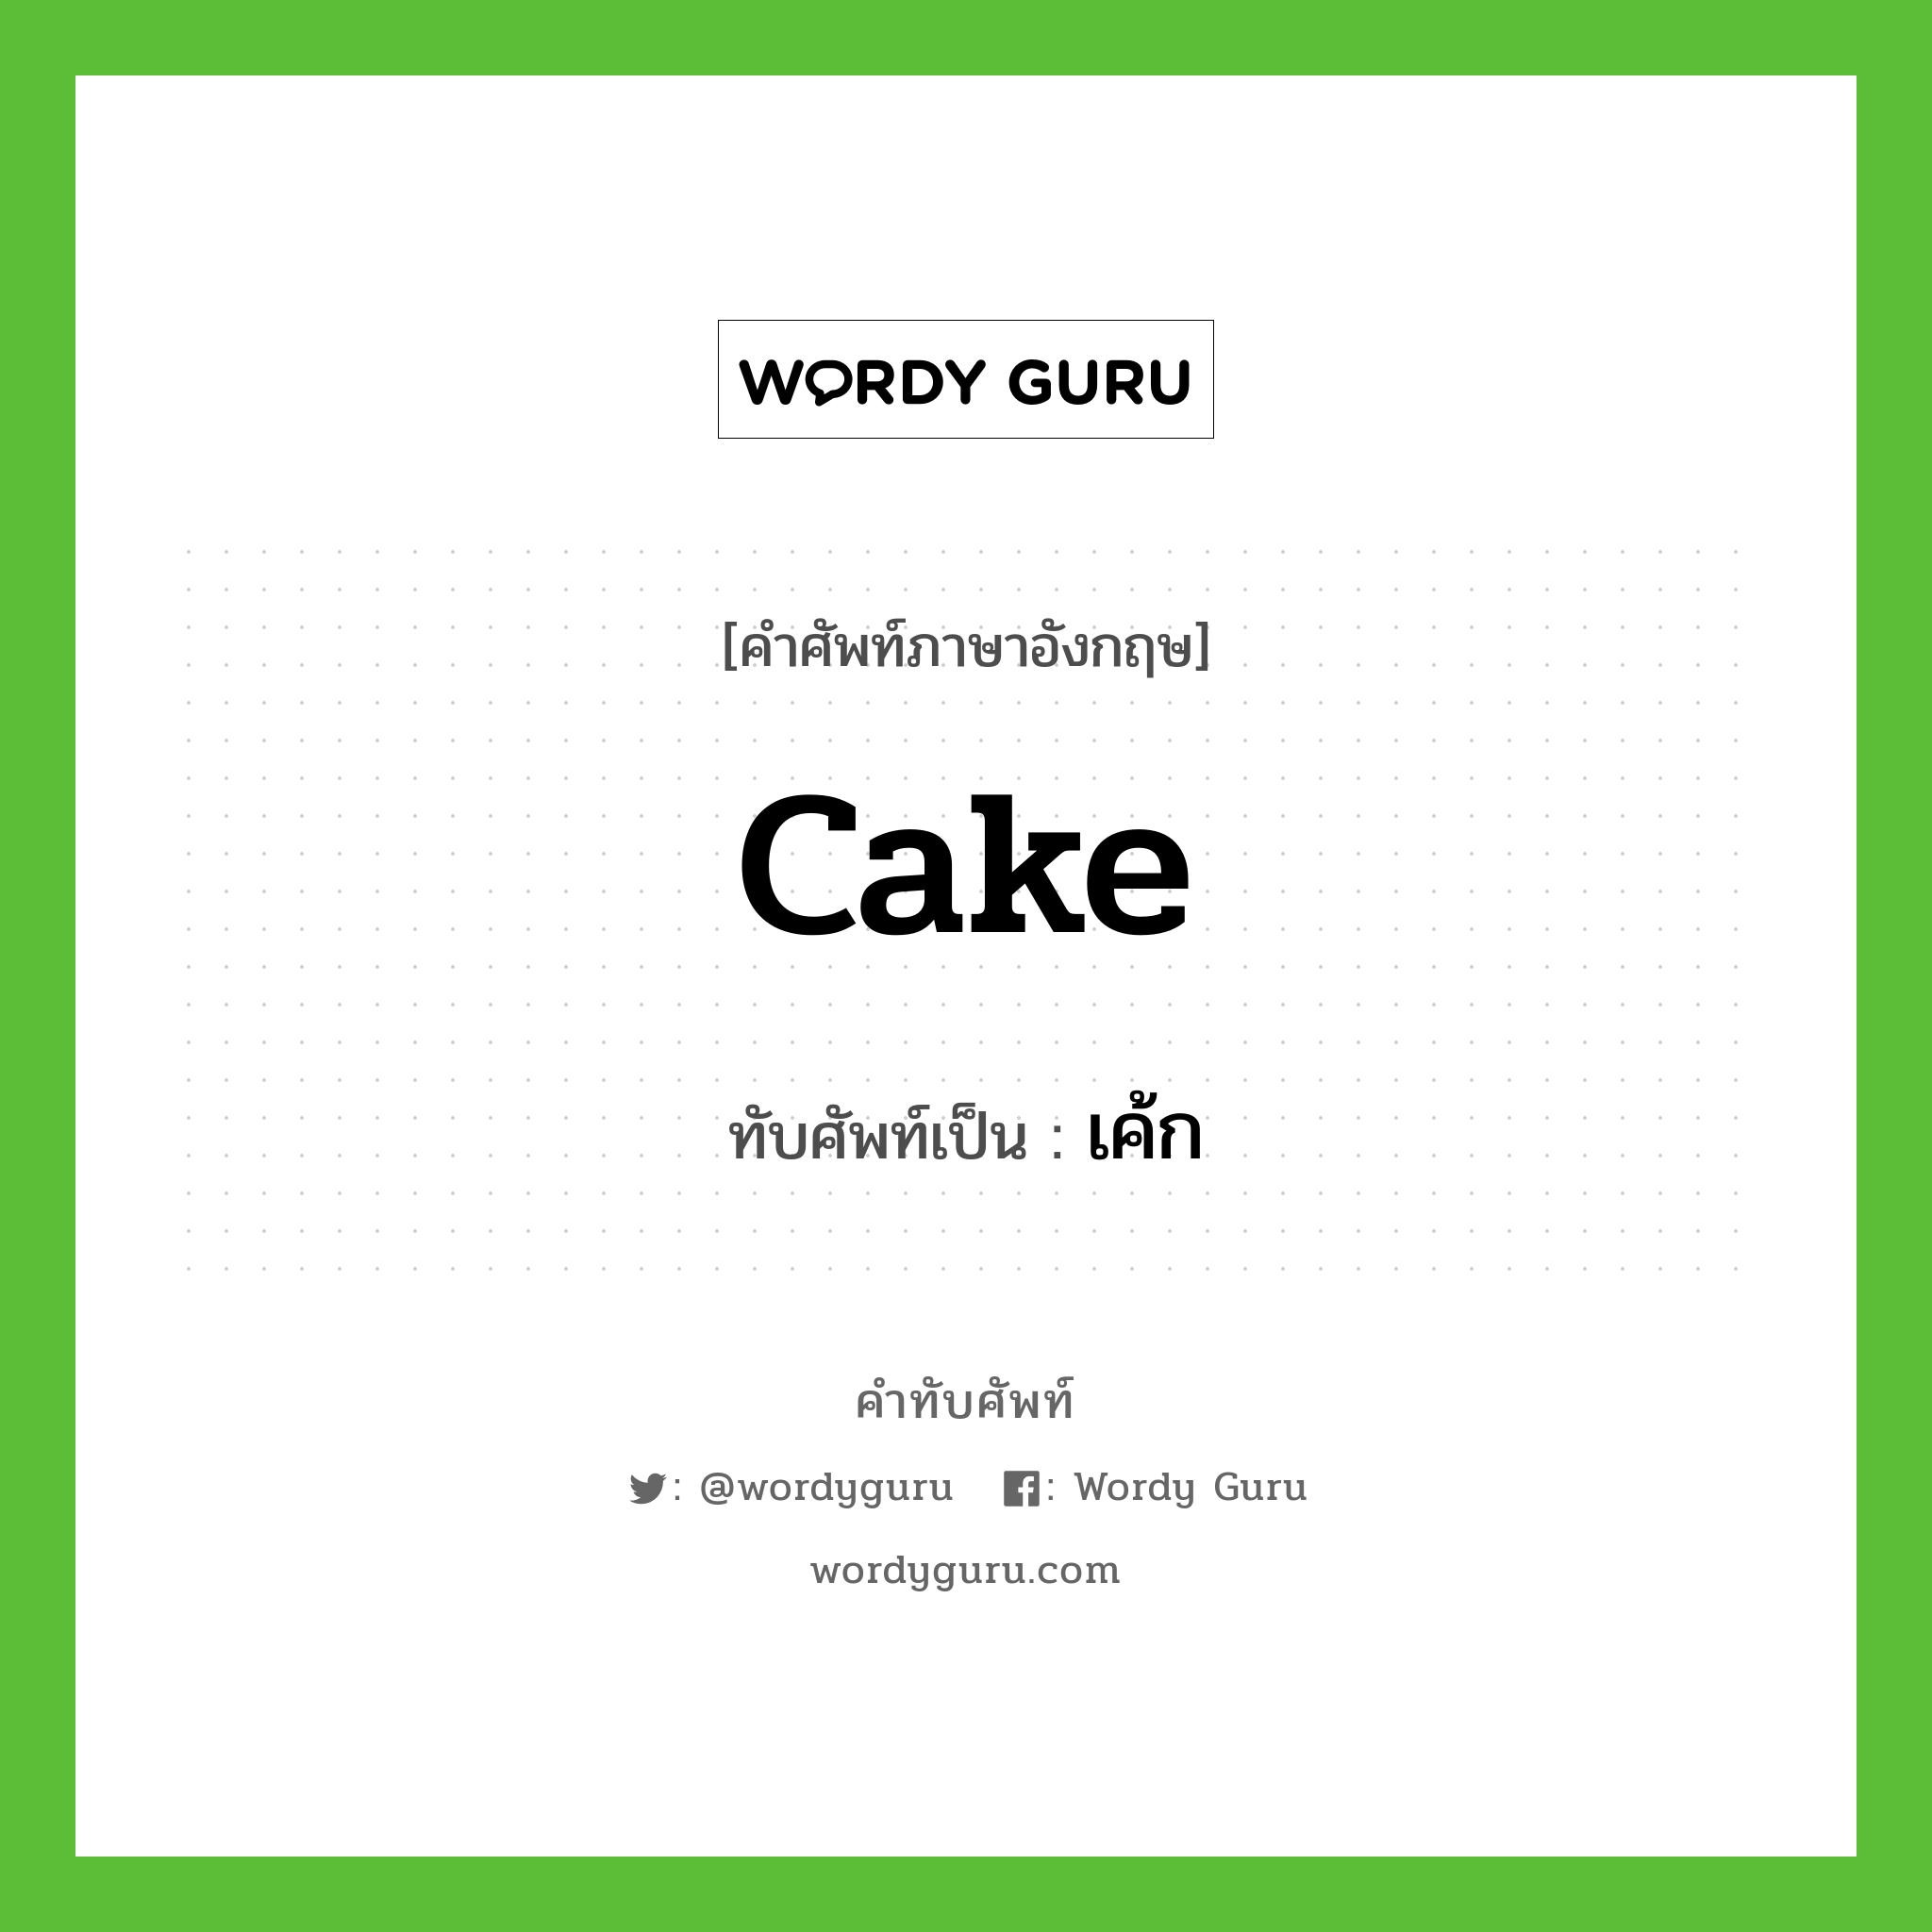 cake เขียนเป็นคำไทยว่าอะไร?, คำศัพท์ภาษาอังกฤษ cake ทับศัพท์เป็น เค้ก